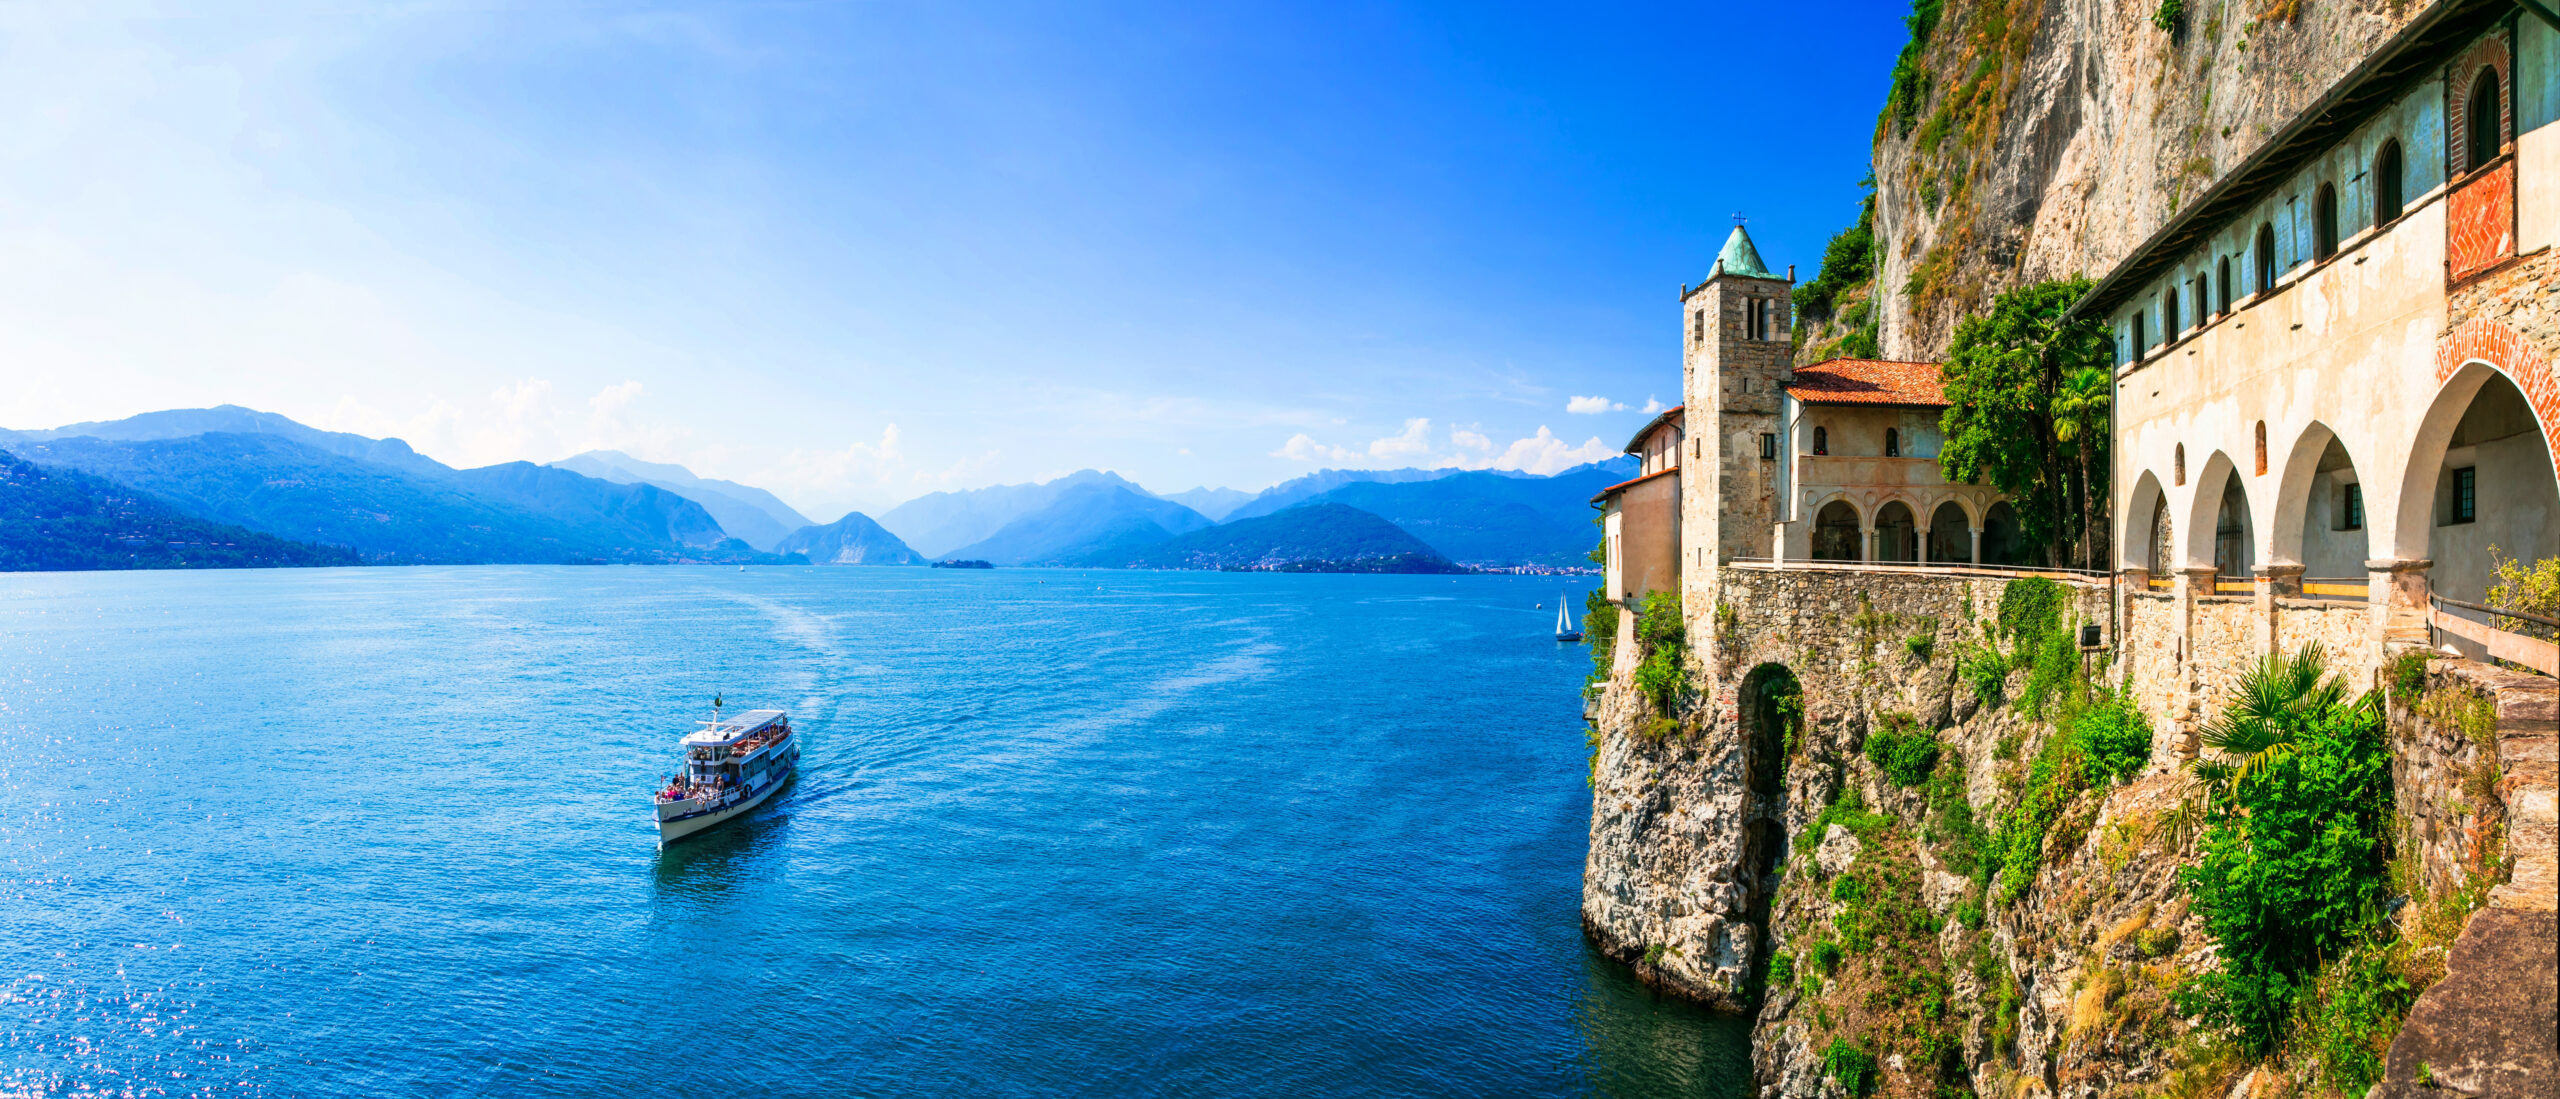 Lago Maggiore Urlaub: Erleben Sie traumhafte Ferien am größten See Italiens